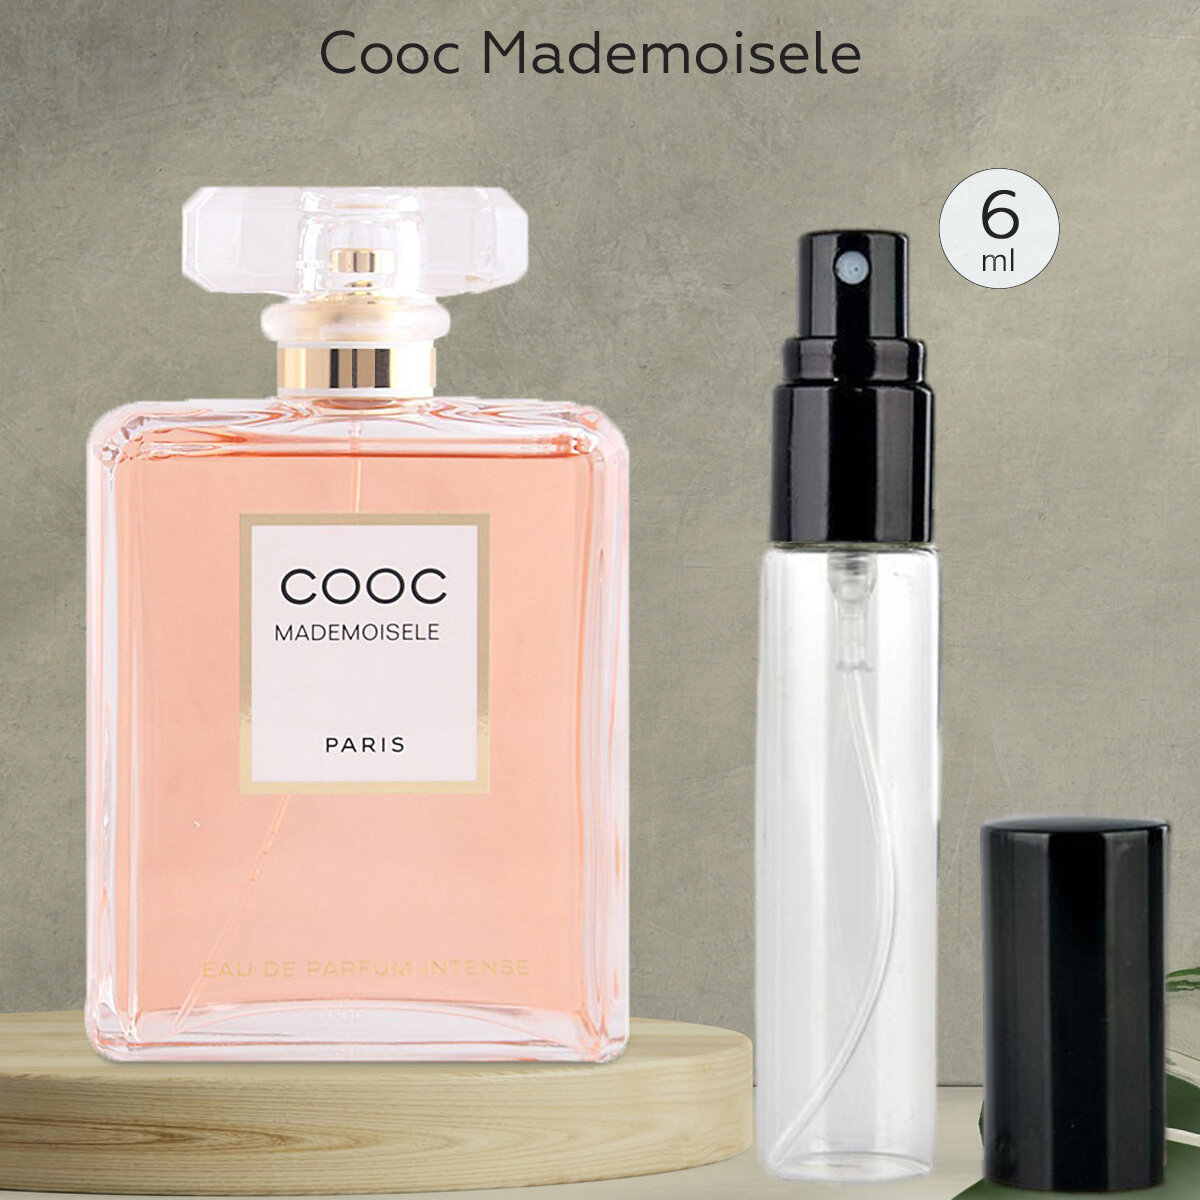 Gratus Parfum Cooc Mademoisele духи женские масляные 6 мл (спрей) + подарок